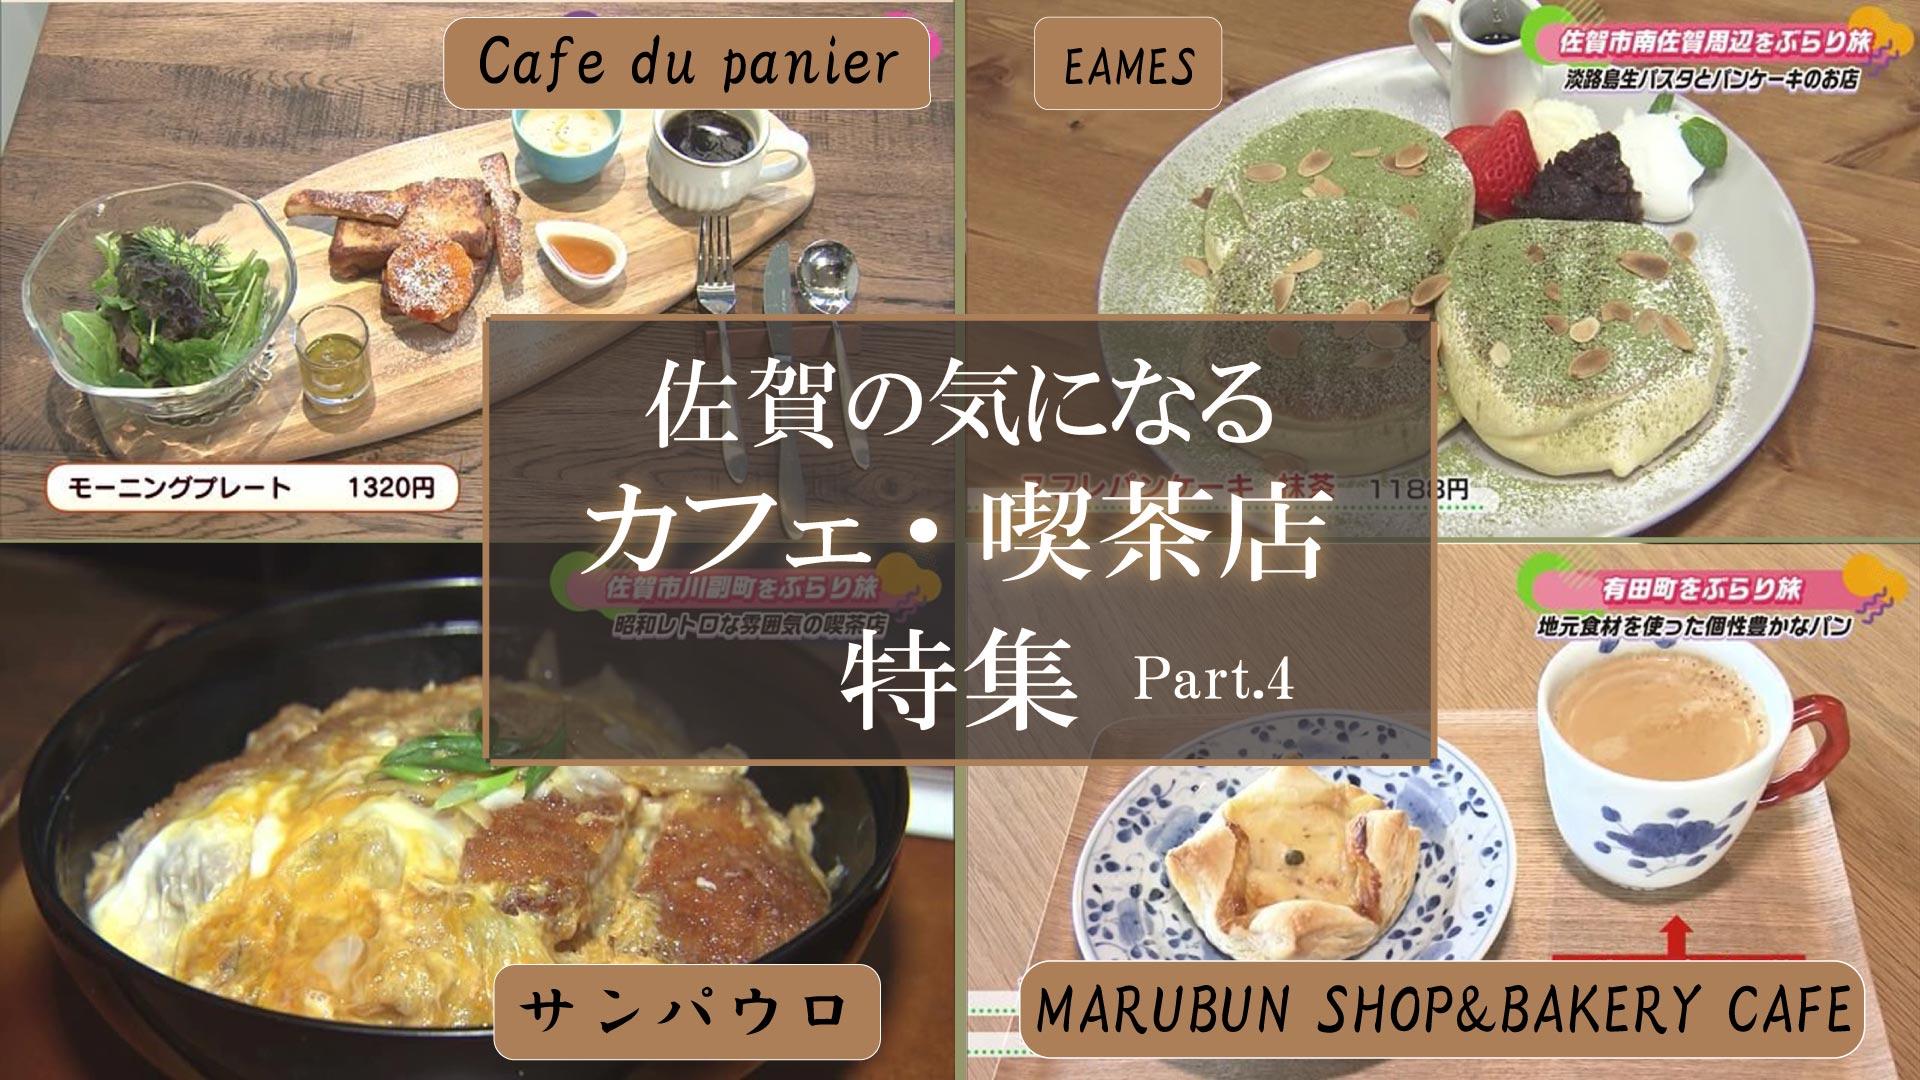 【特集】佐賀のおすすめ喫茶店・カフェ Part.4 (有田町・佐賀市)